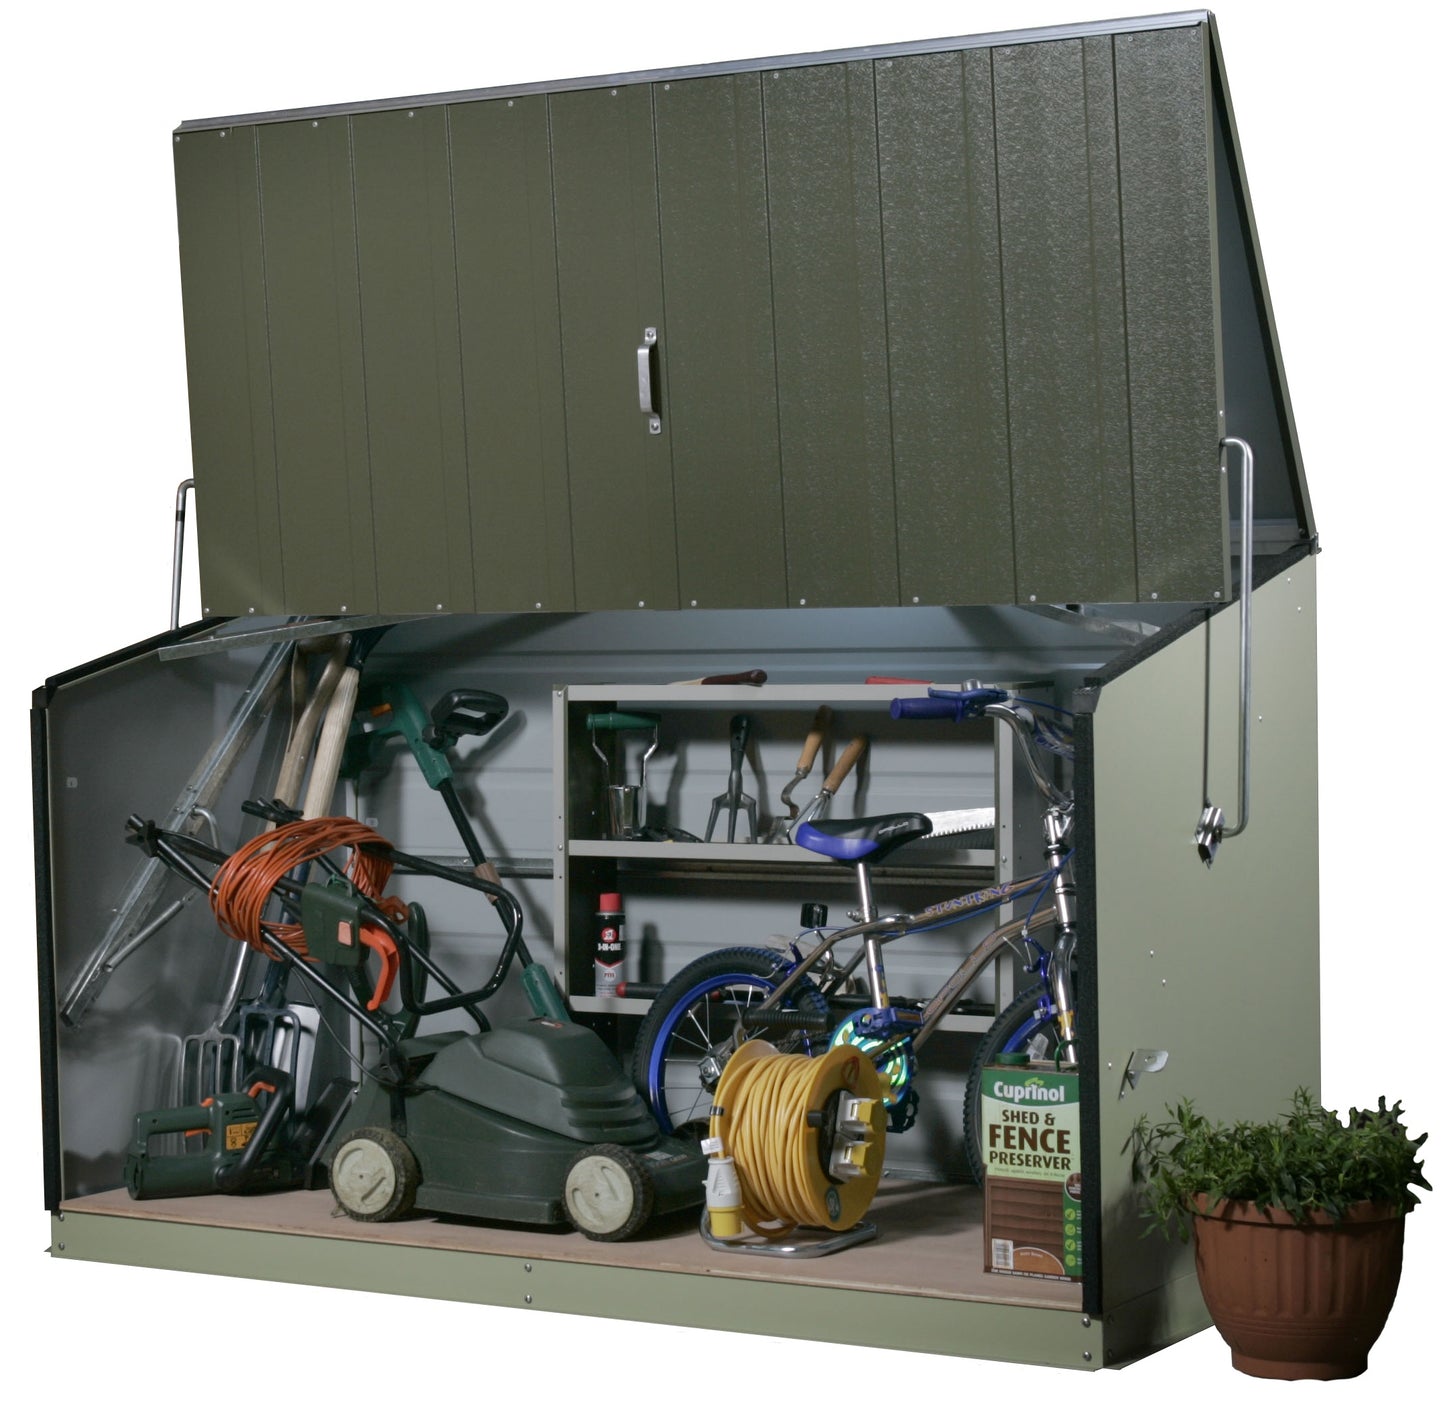 Trimetals Storeguard Metal Outdoor Storage Unit - Olive & Moorland Green - Premium Garden